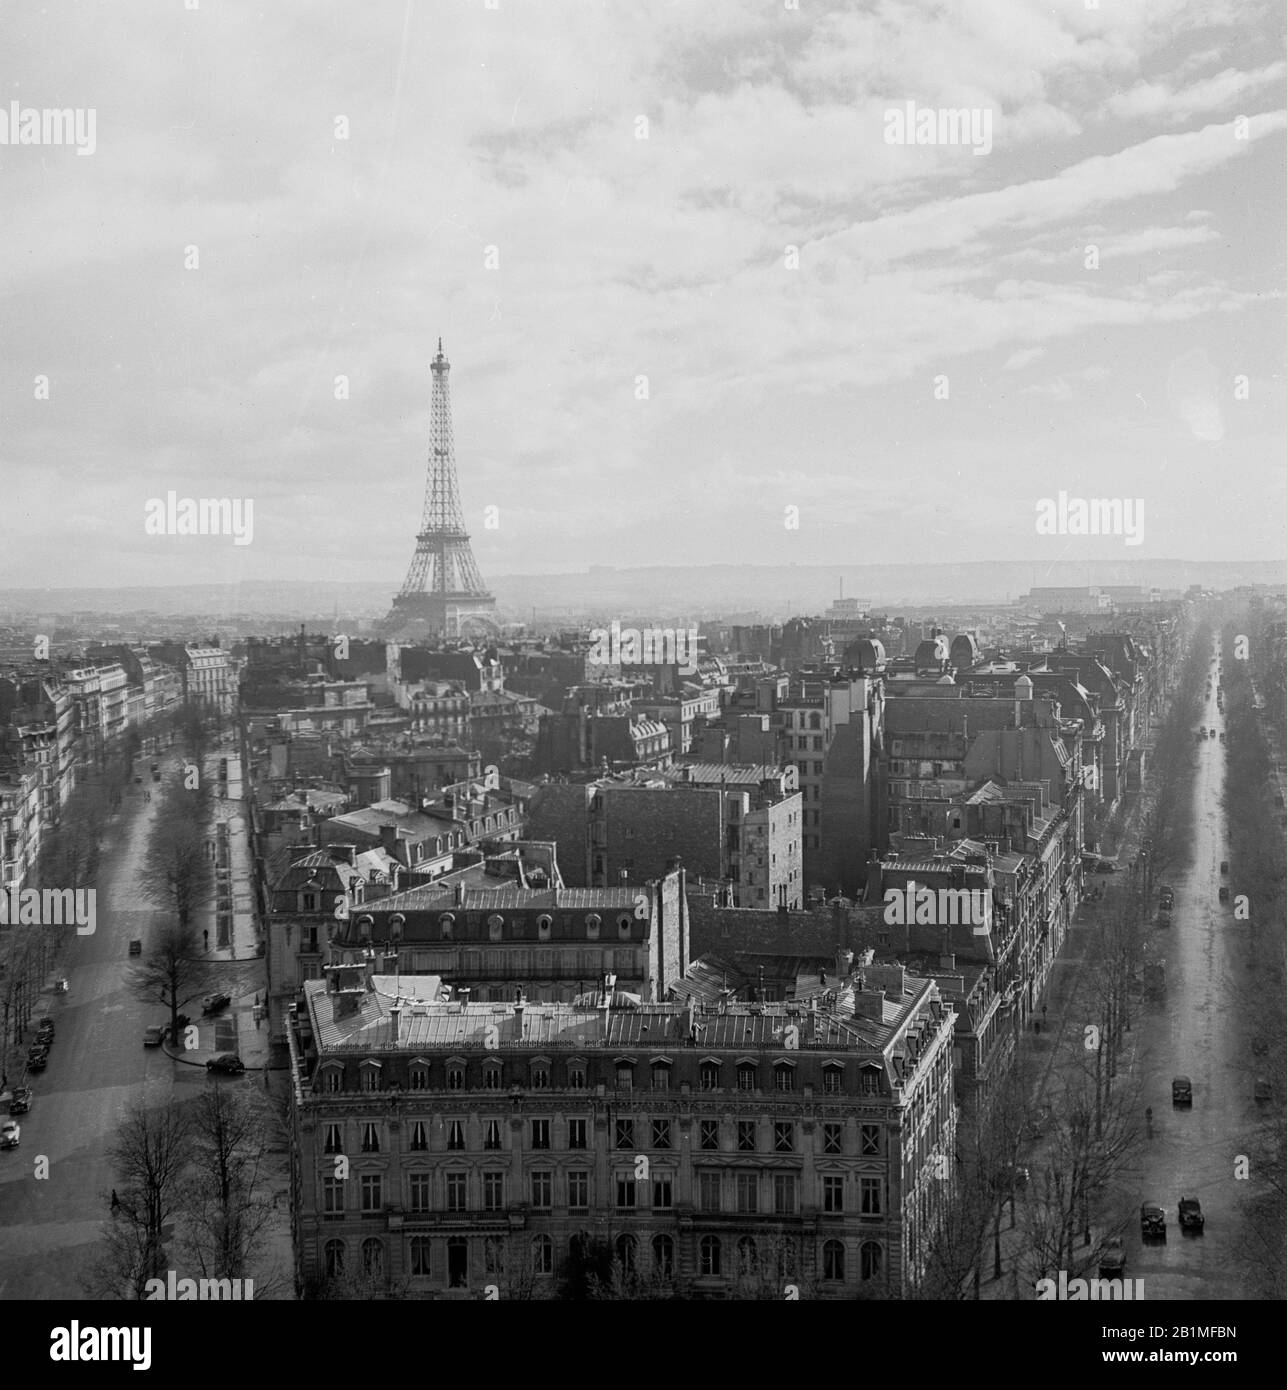 1950s, vista storica e aerea sullo skyline di Parigi, con il famoso punto di riferimento parigino, la Torre Eiffel sul Champ de Mars in lontananza. Costruita nel 1889 per la Fiera del mondo, la torre in ferro battuto è una struttura iconica della città e considerata una meraviglia architettonica. Foto Stock